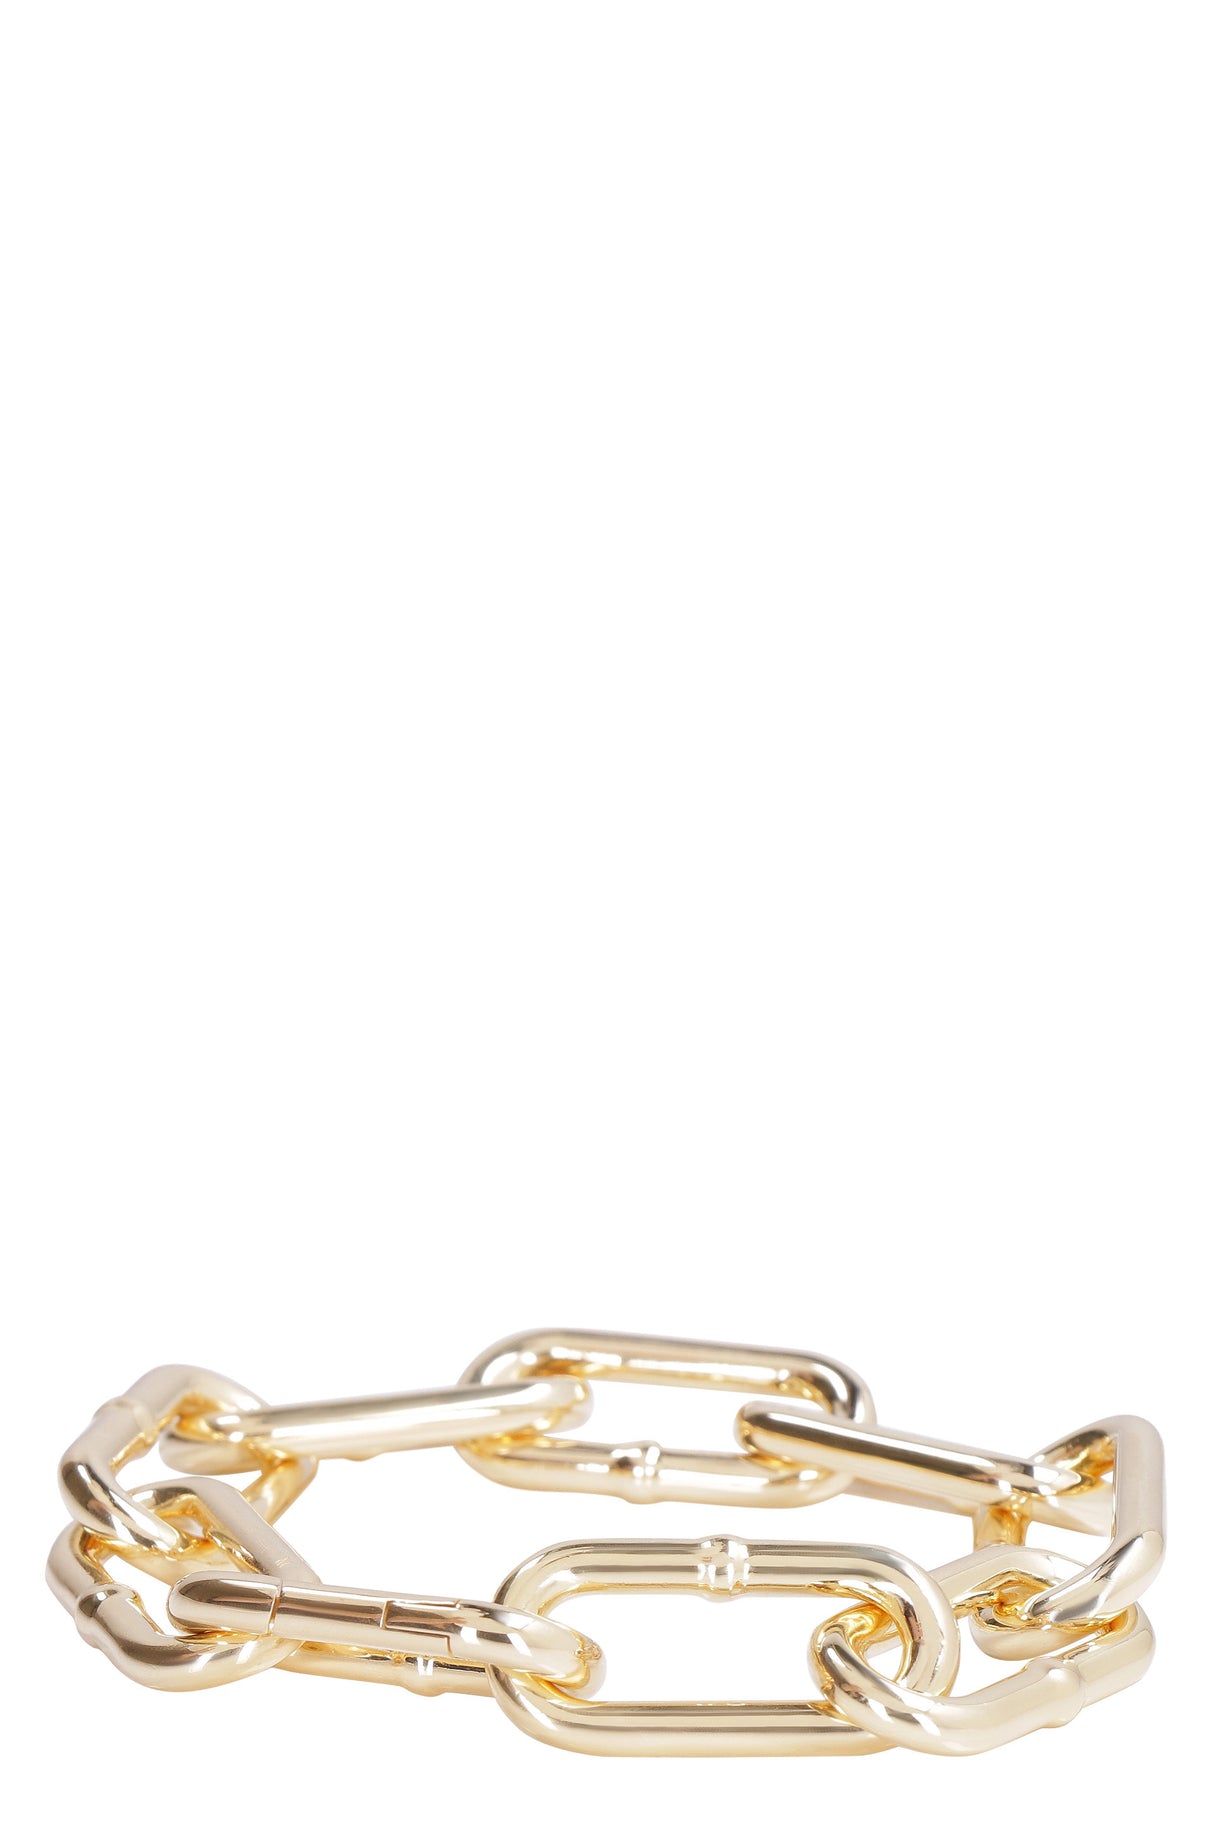 BOTTEGA VENETA Gold Plated Women's Chain Bracelet with 925 Silver - 22cm